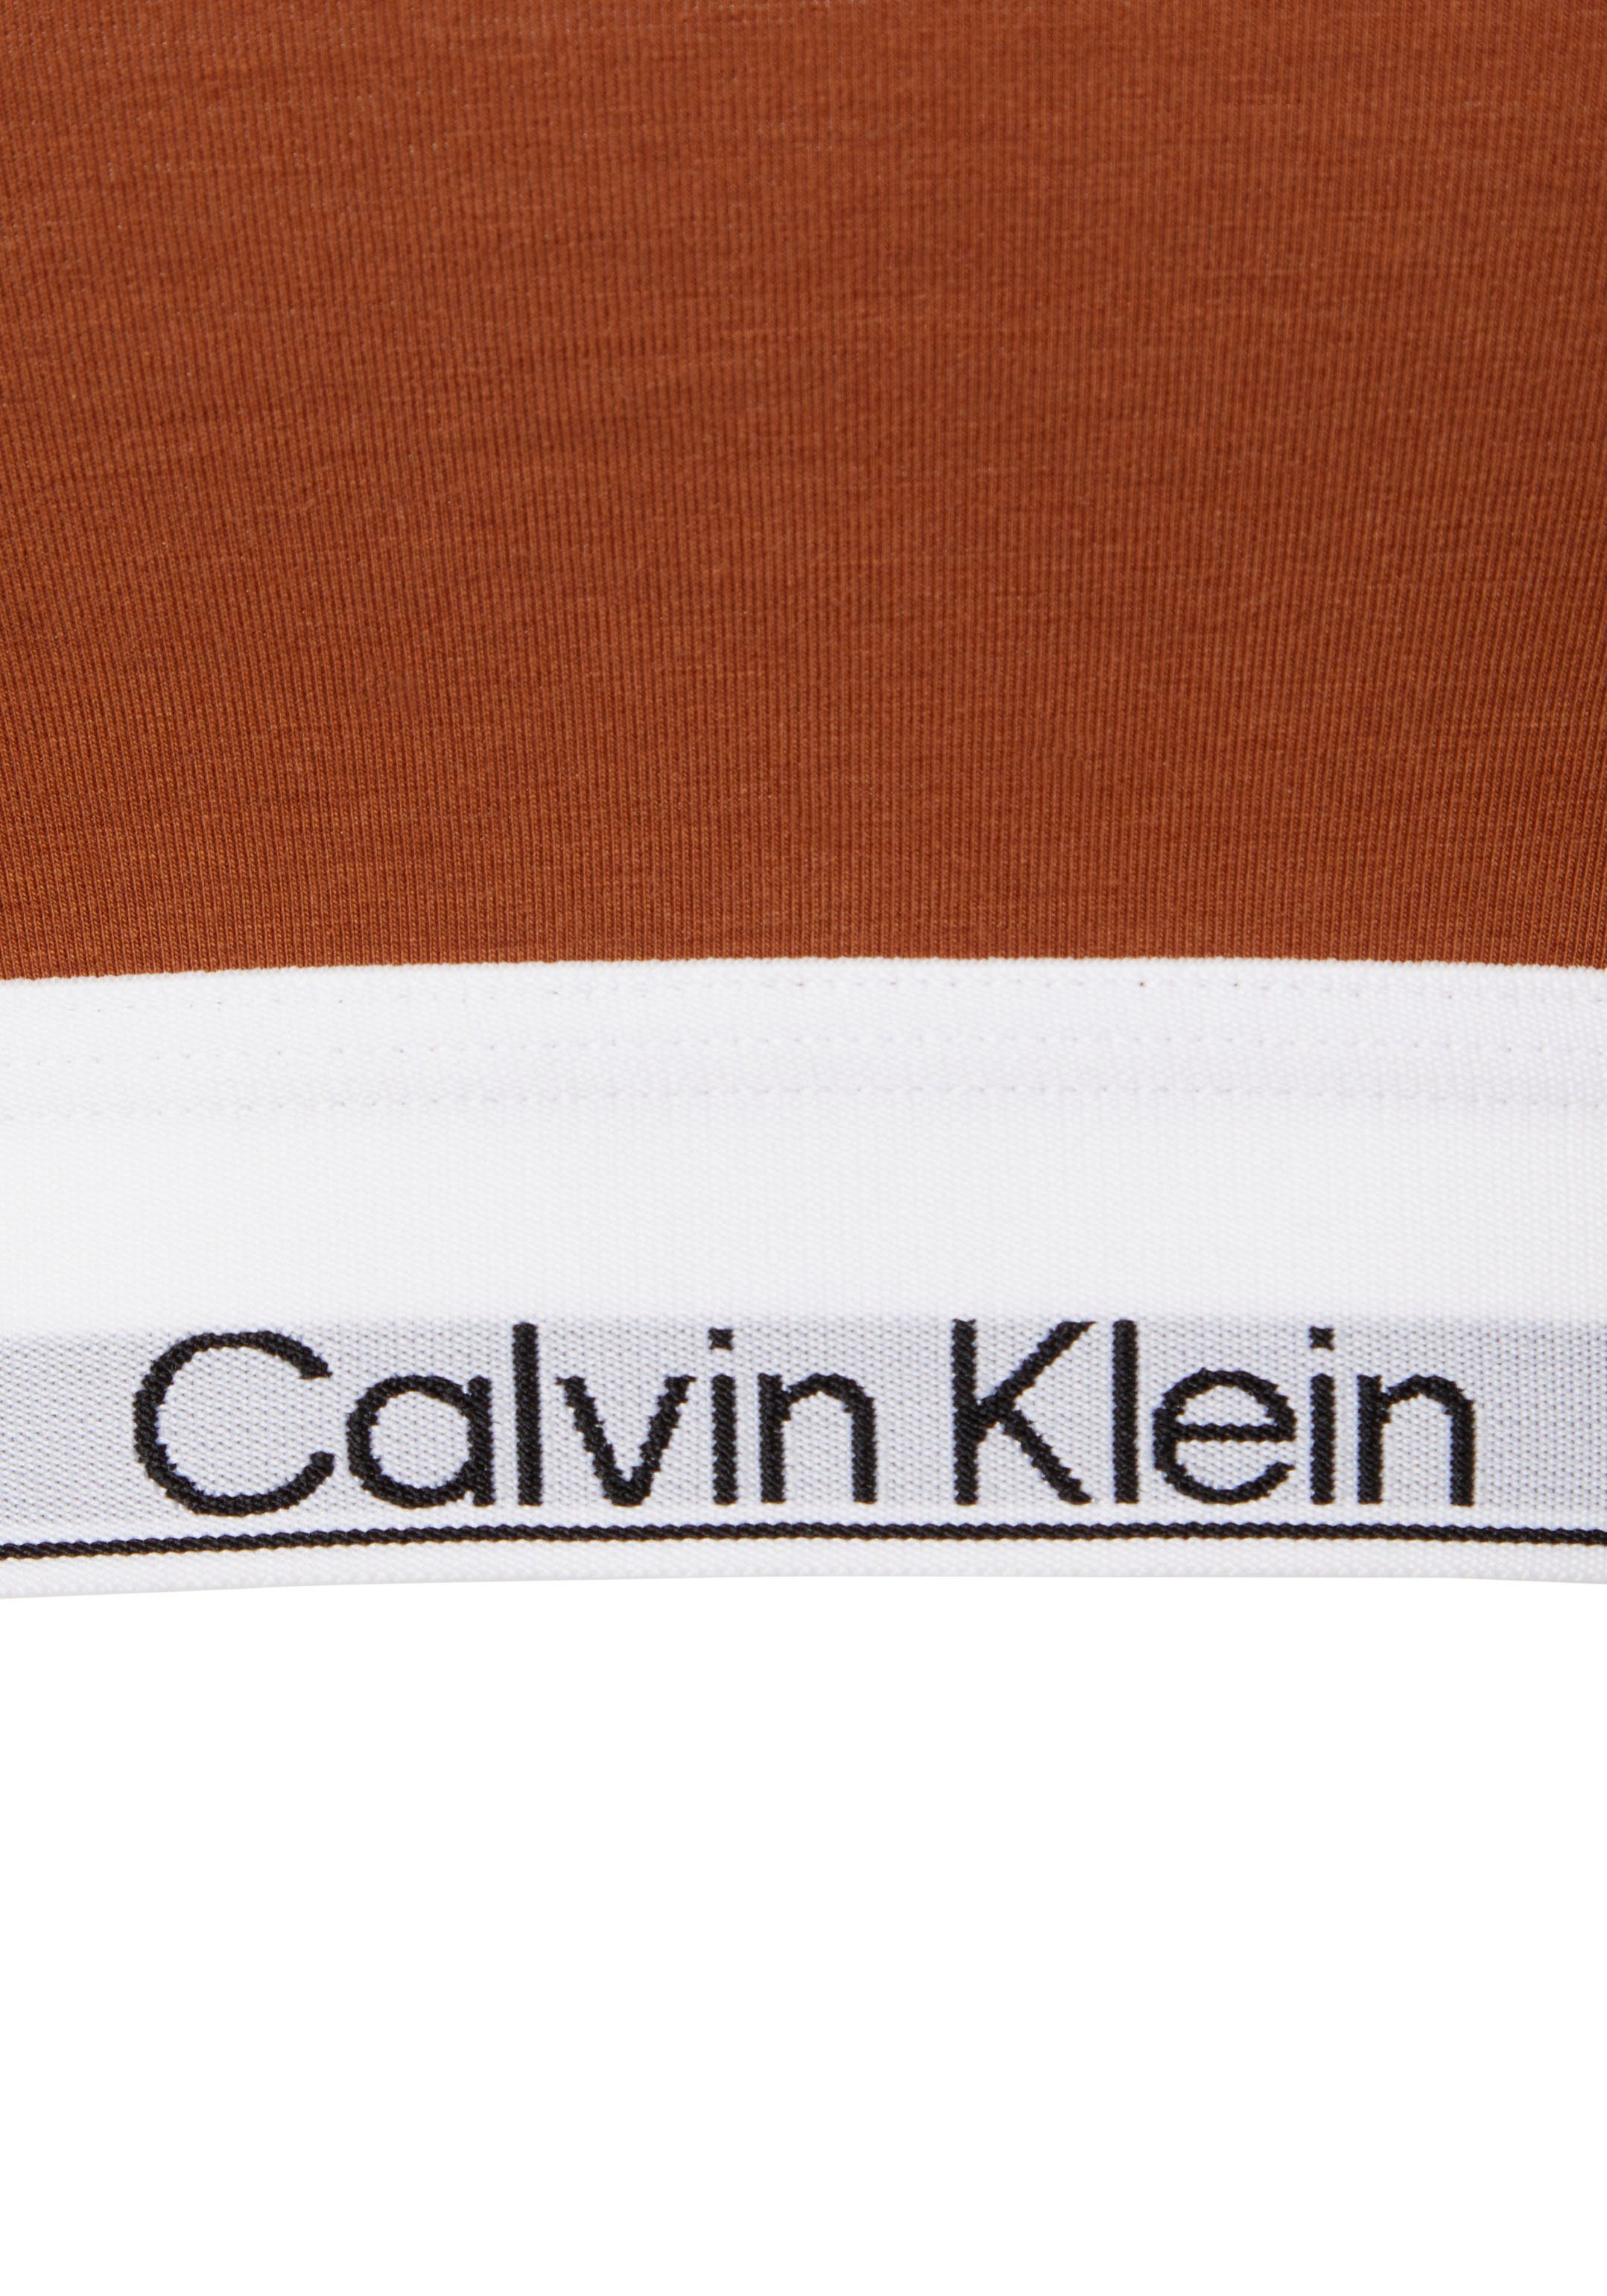 Calvin Klein Elastik-Unterbrustband Underwear braun mit Bralette auf Logodruck dem